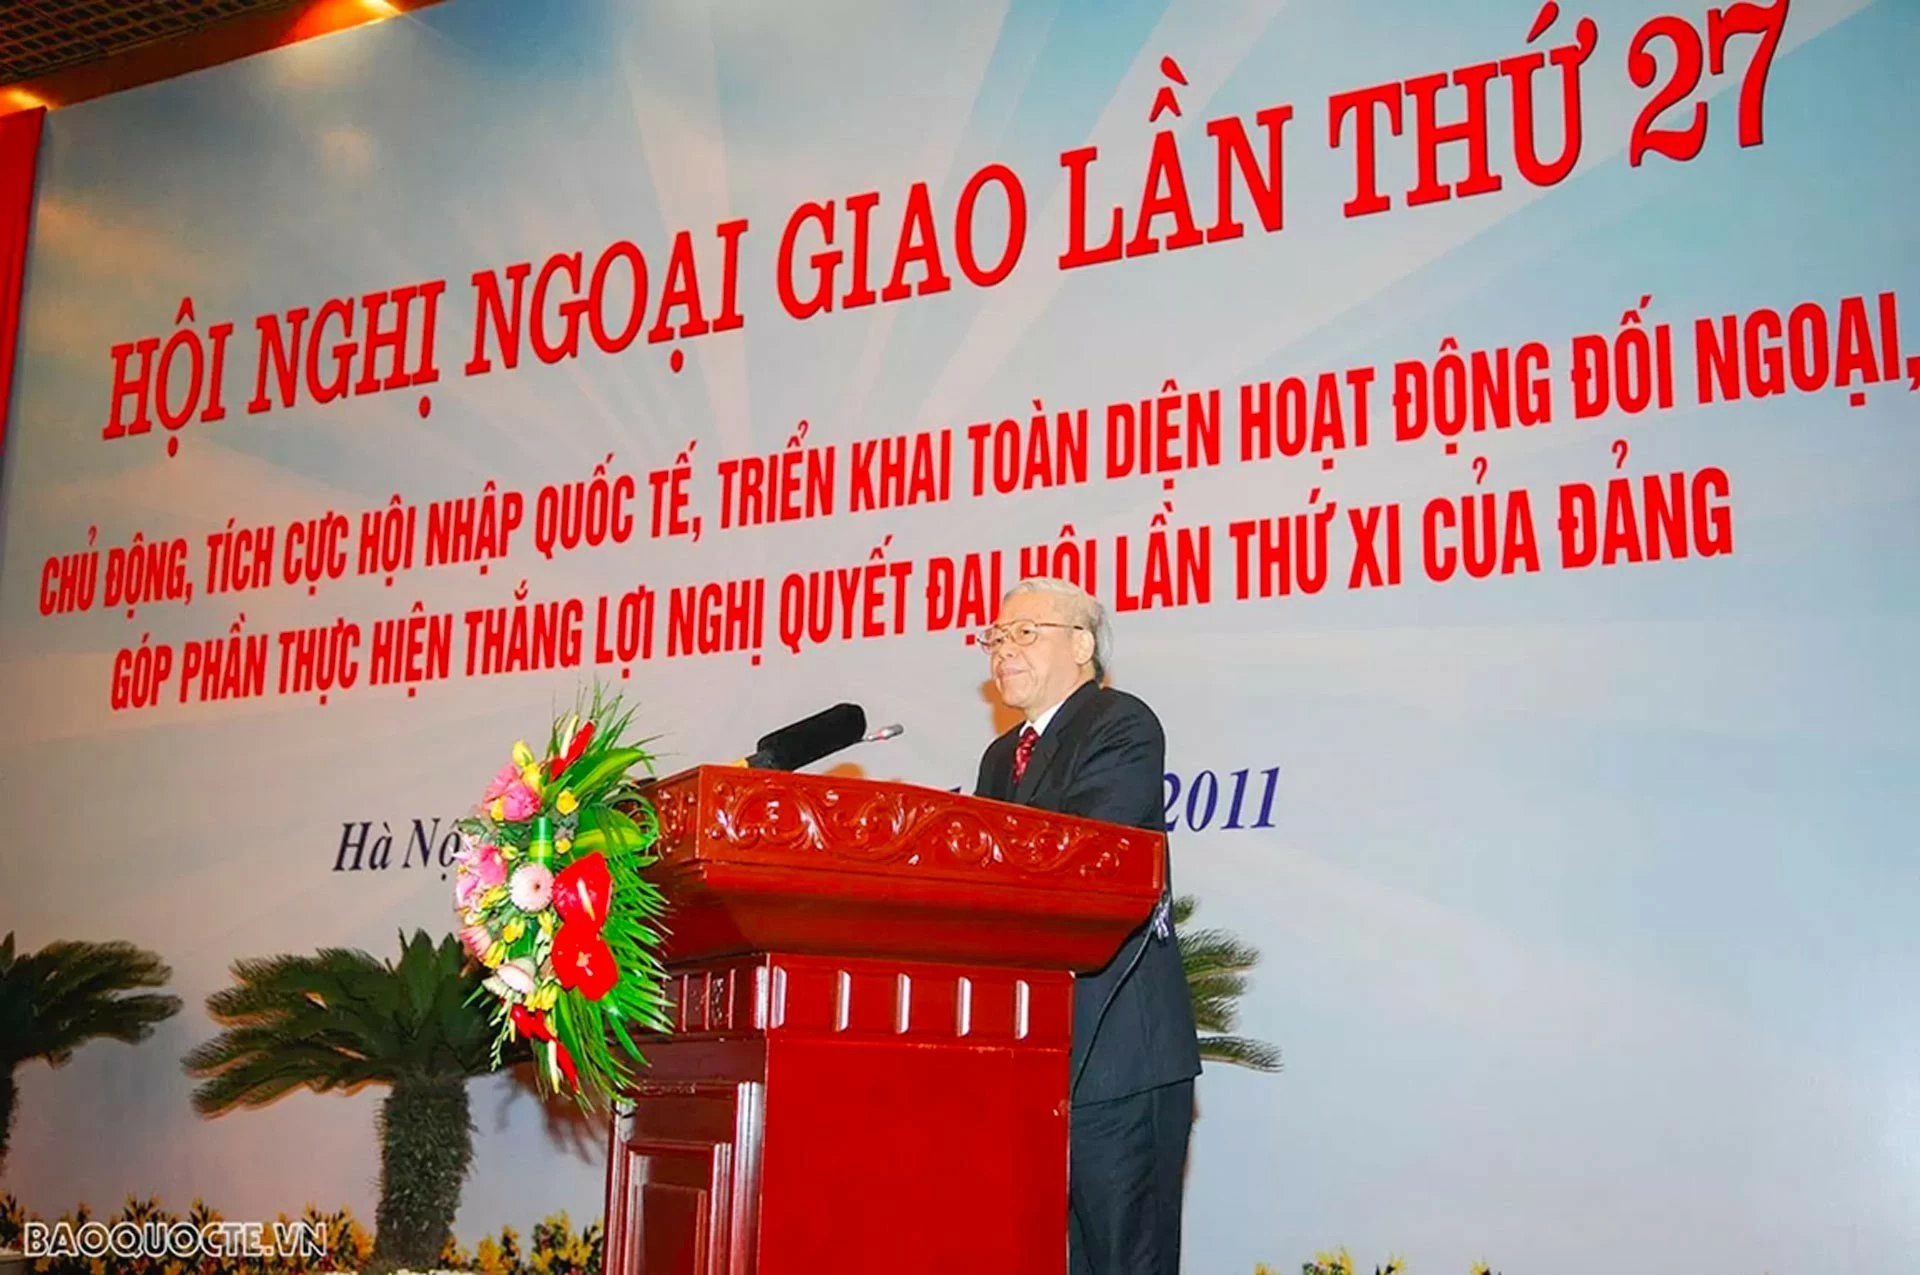 Ngoại giao ghi đậm dấu ấn của Tổng Bí thư Nguyễn Phú Trọng